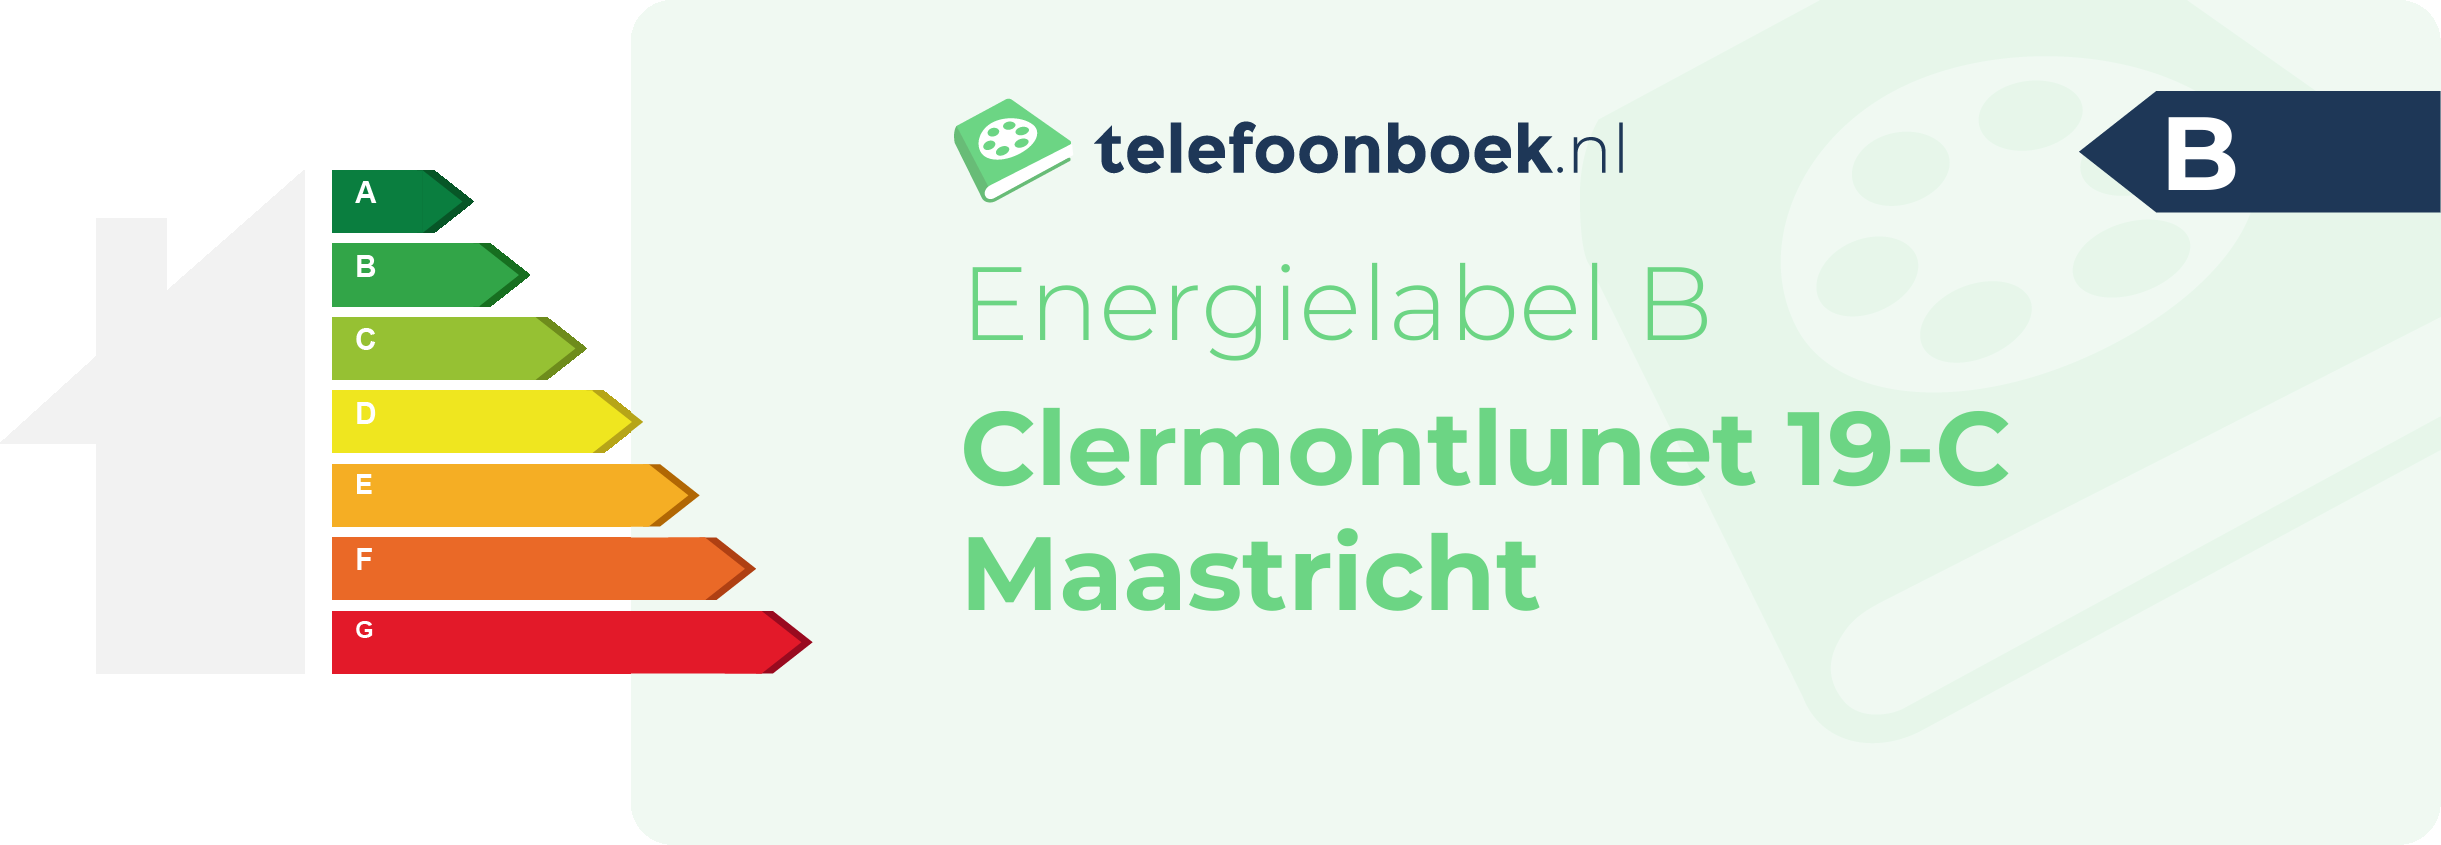 Energielabel Clermontlunet 19-C Maastricht